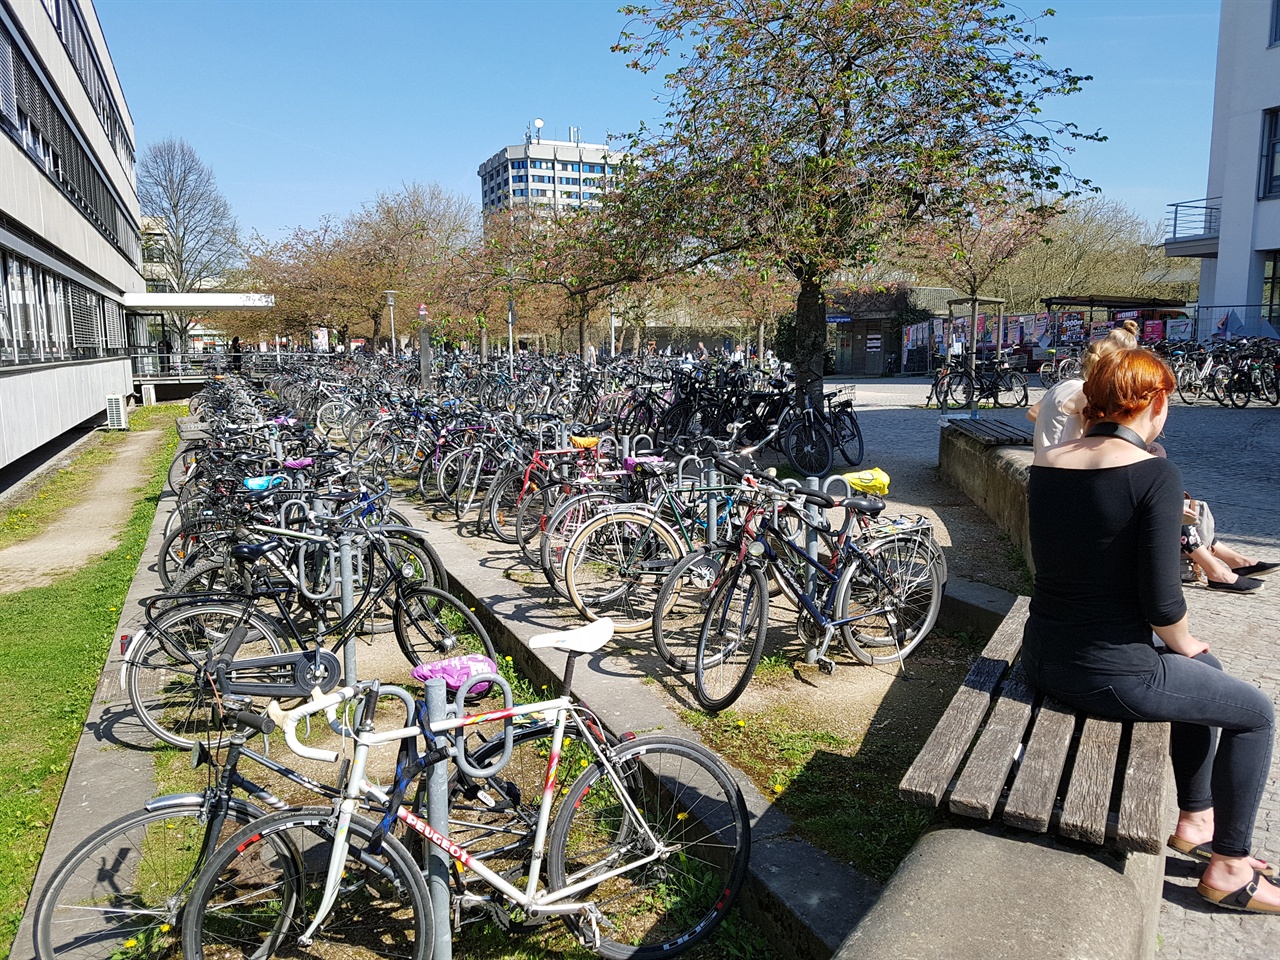 괴팅겐대학교 학생들은 학교와 주거지를 오갈 때 주로 자전거를 활용한다.